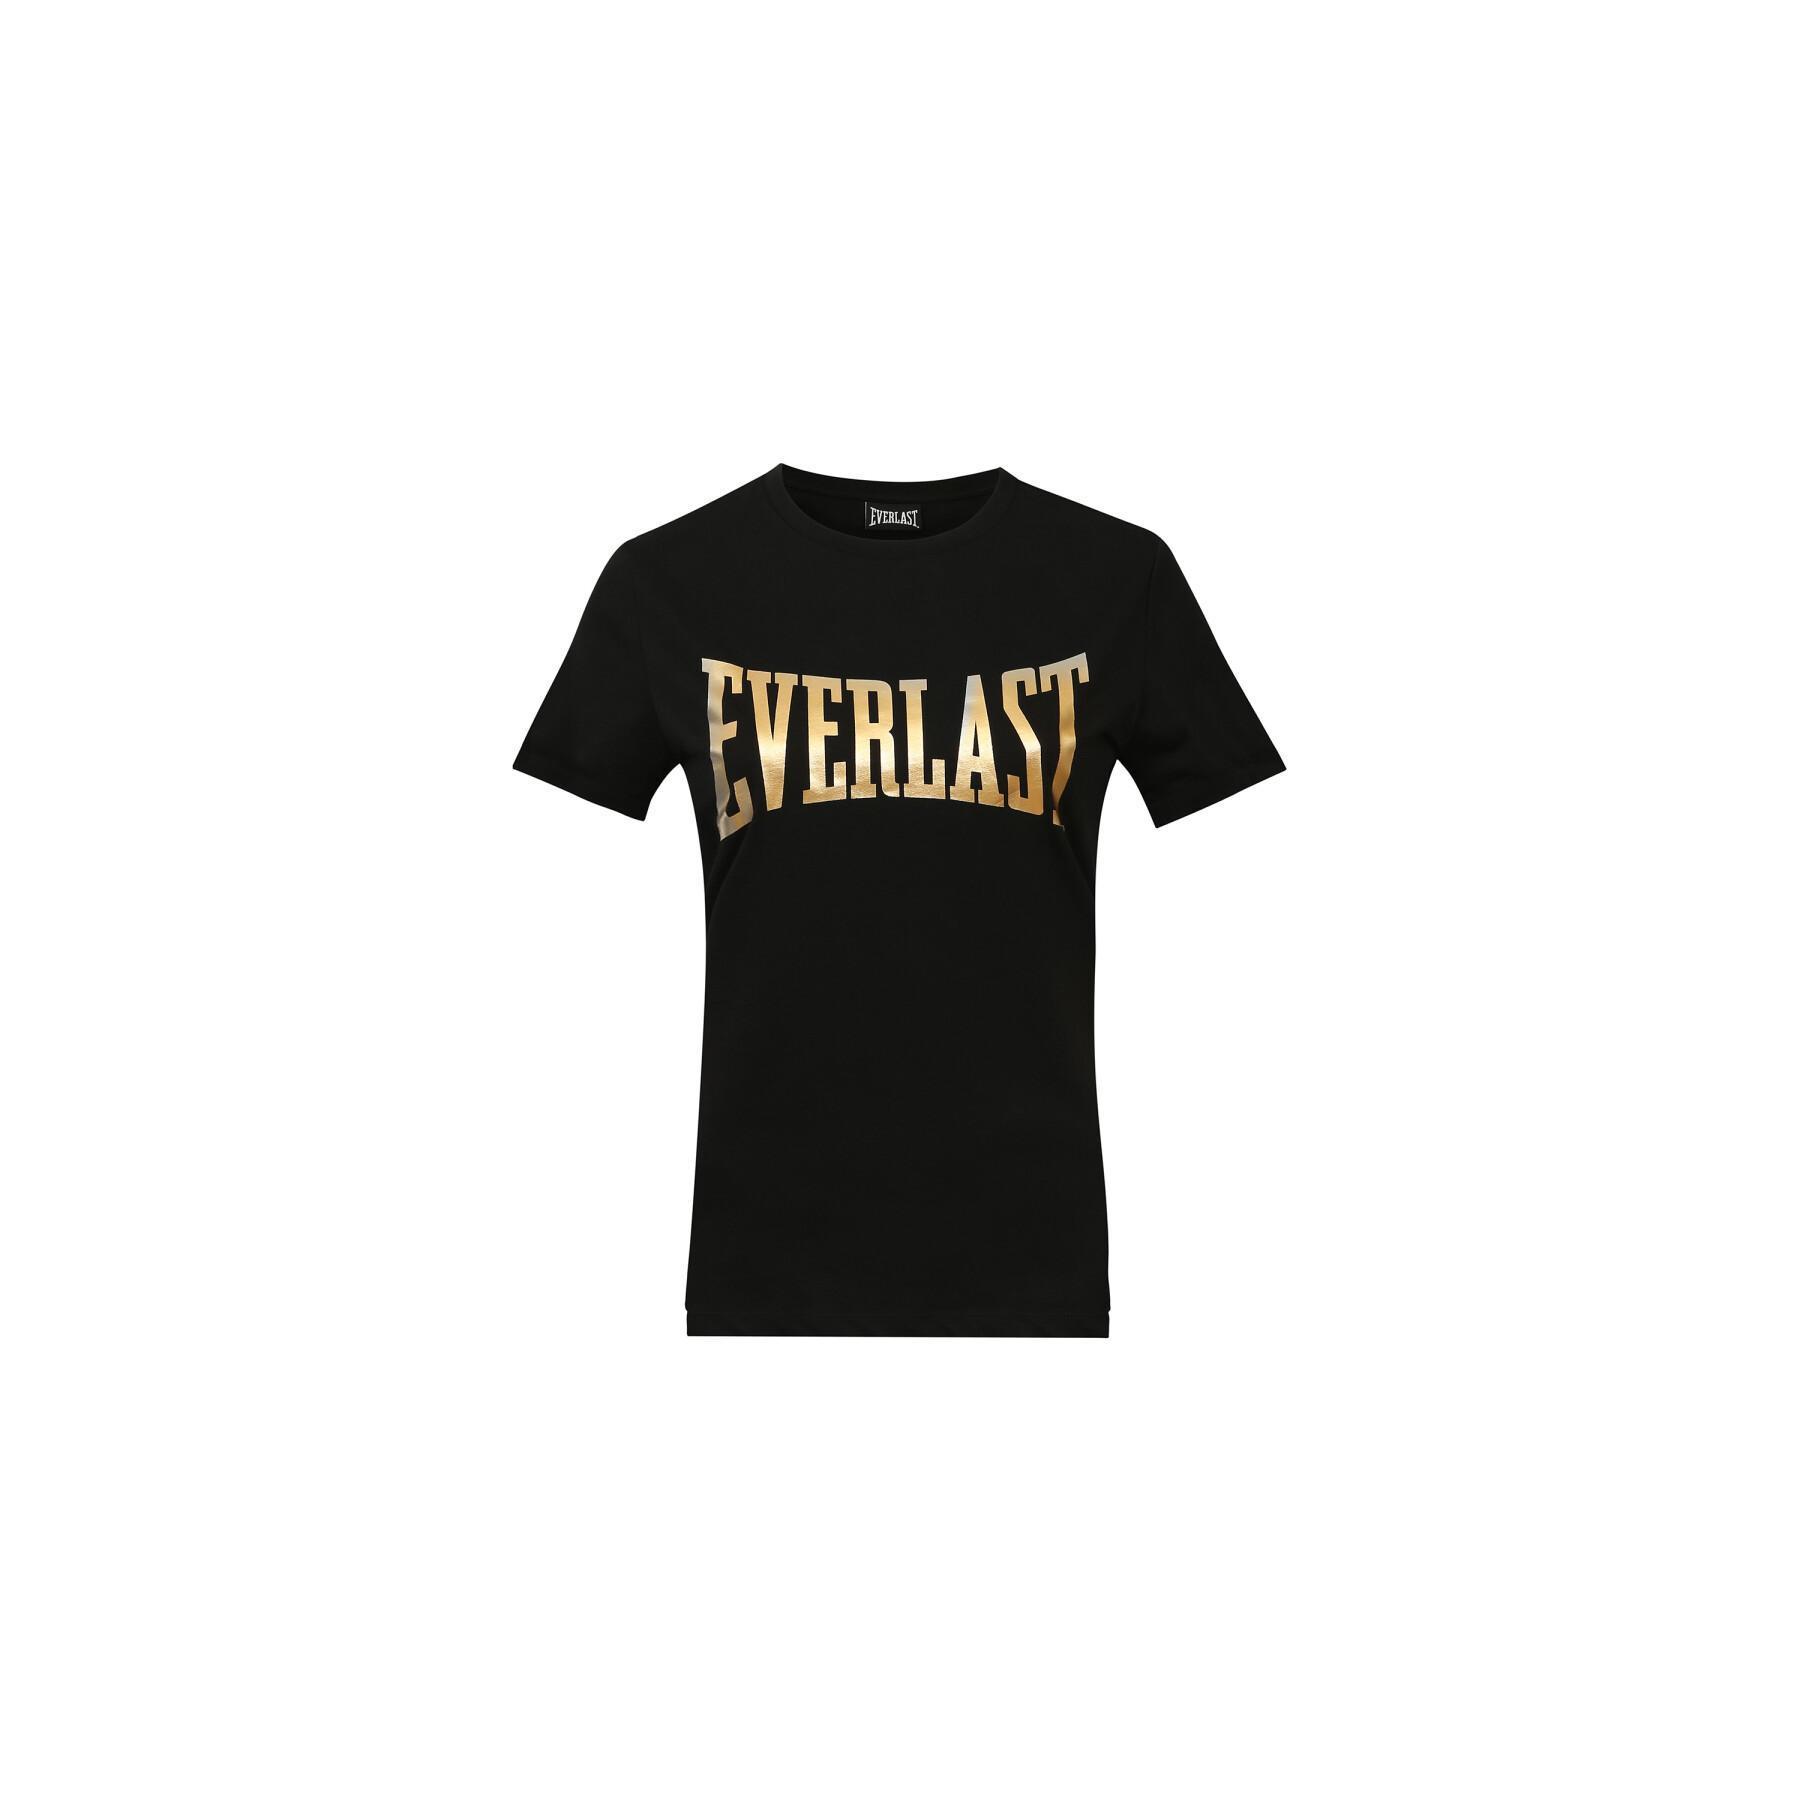 Damska koszulka z krótkim rękawem Everlast lawrence 2